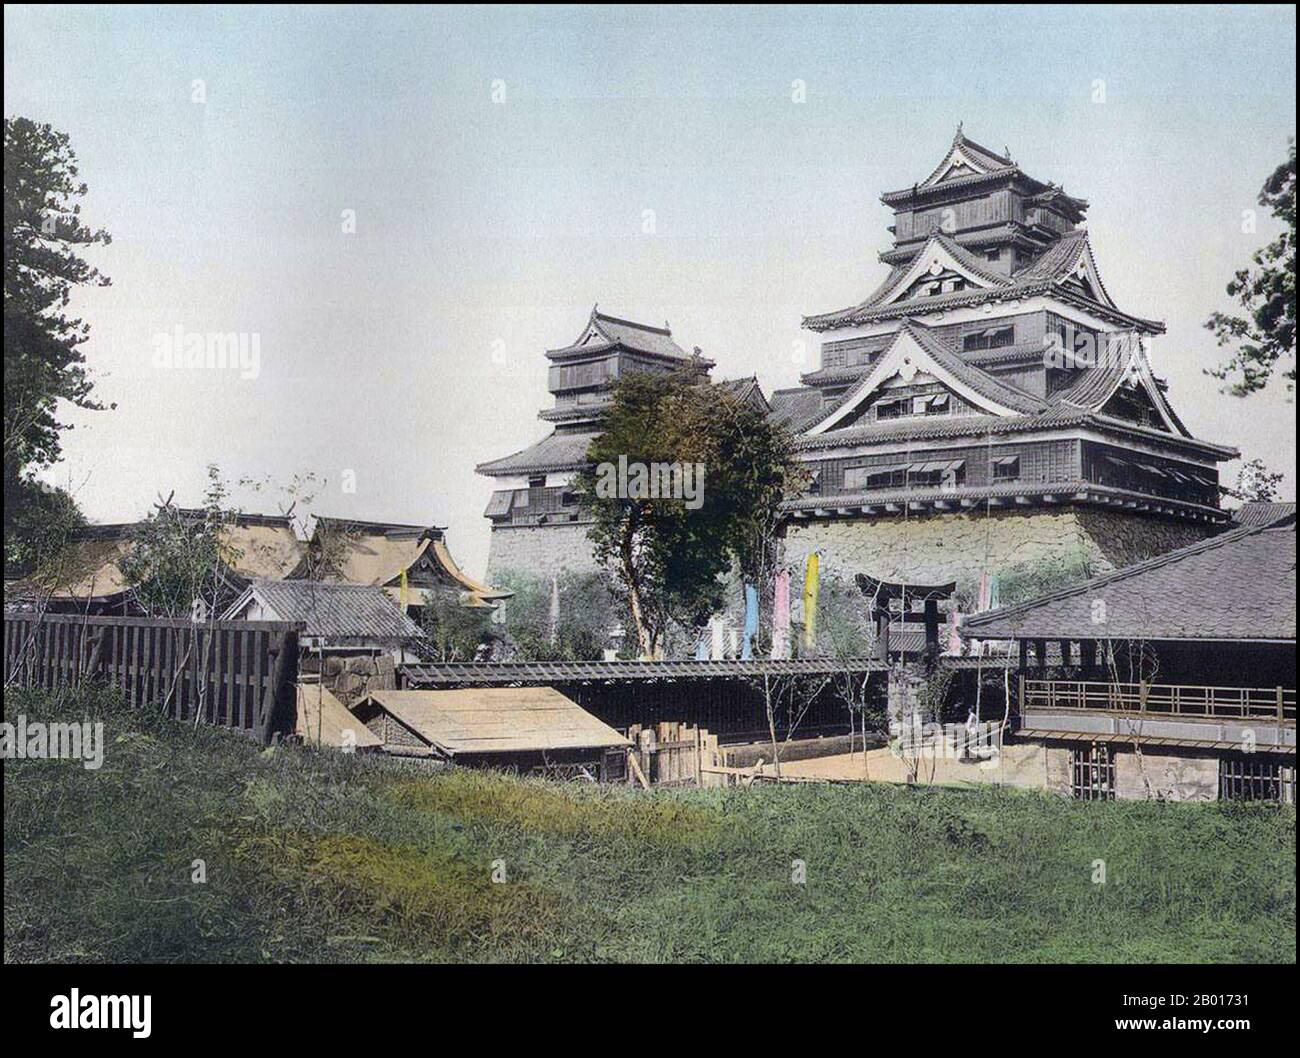 Japón: El Castillo, Kumamoto, c. 1895. Kumamoto es la capital de la prefectura de Kumamoto en la isla de Kyūshū, Japón. Kato Kiyomasa, un contemporáneo de Toyotomi Hideyoshi, fue hecho daimyo de la mitad de la (antigua) región administrativa de Higo en 1588. Después de eso, Kiyomasa construyó el Castillo de Kumamoto. Debido a sus muchos diseños defensivos innovadores, el Castillo de Kumamoto fue considerado inexpugnable, y Kiyomasa disfrutó de una reputación como uno de los mejores constructores de castillos en la historia japonesa. Hoy en día el donjon (torre central) es una reconstrucción de hormigón construida en el año 1970s. Foto de stock